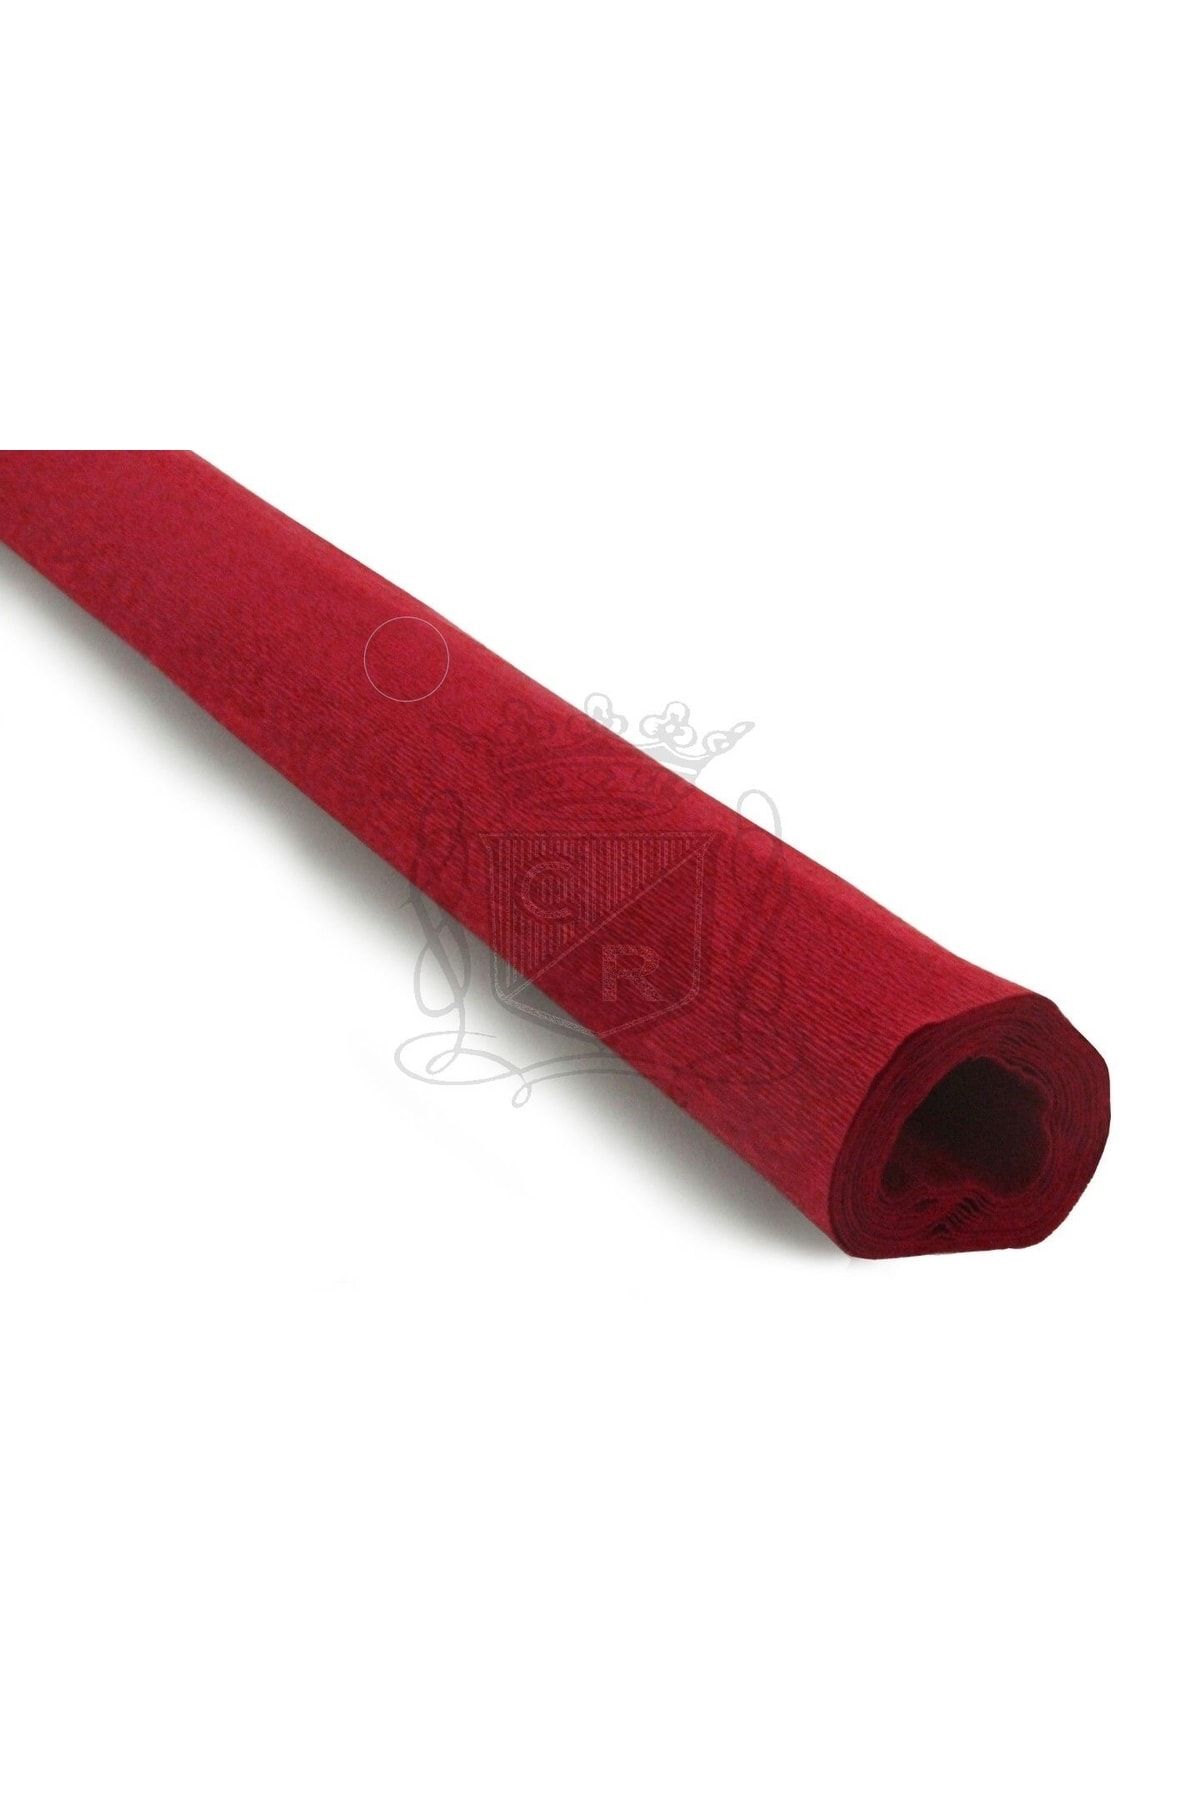 roco paper Italyan Krapon Kağıdı No:392 - Kırmızı - Red 90 Gr. 50x150 Cm